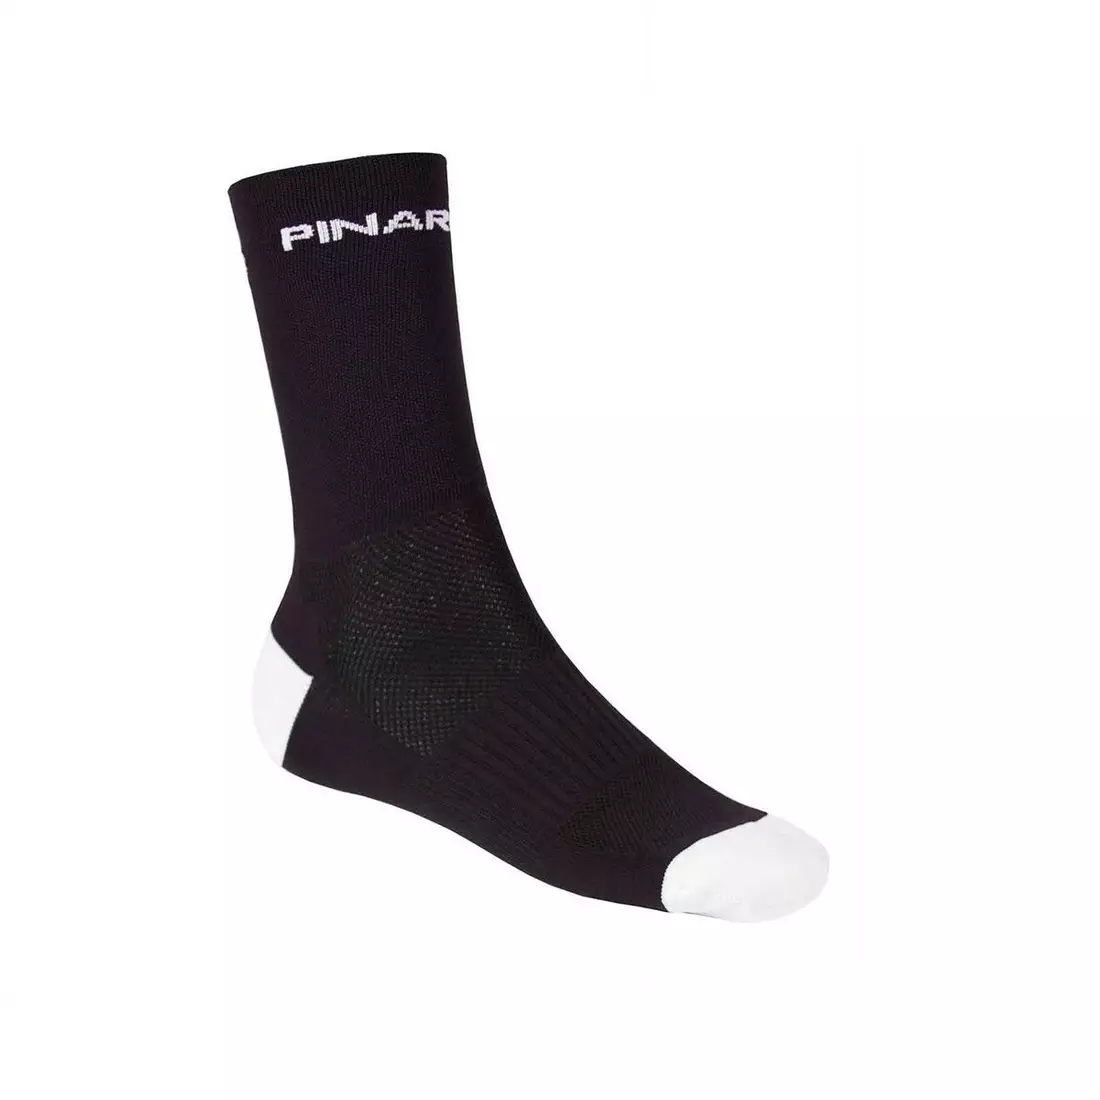 Sportovní ponožky PINARELLO TALL CUFF (vysoké), černobílé